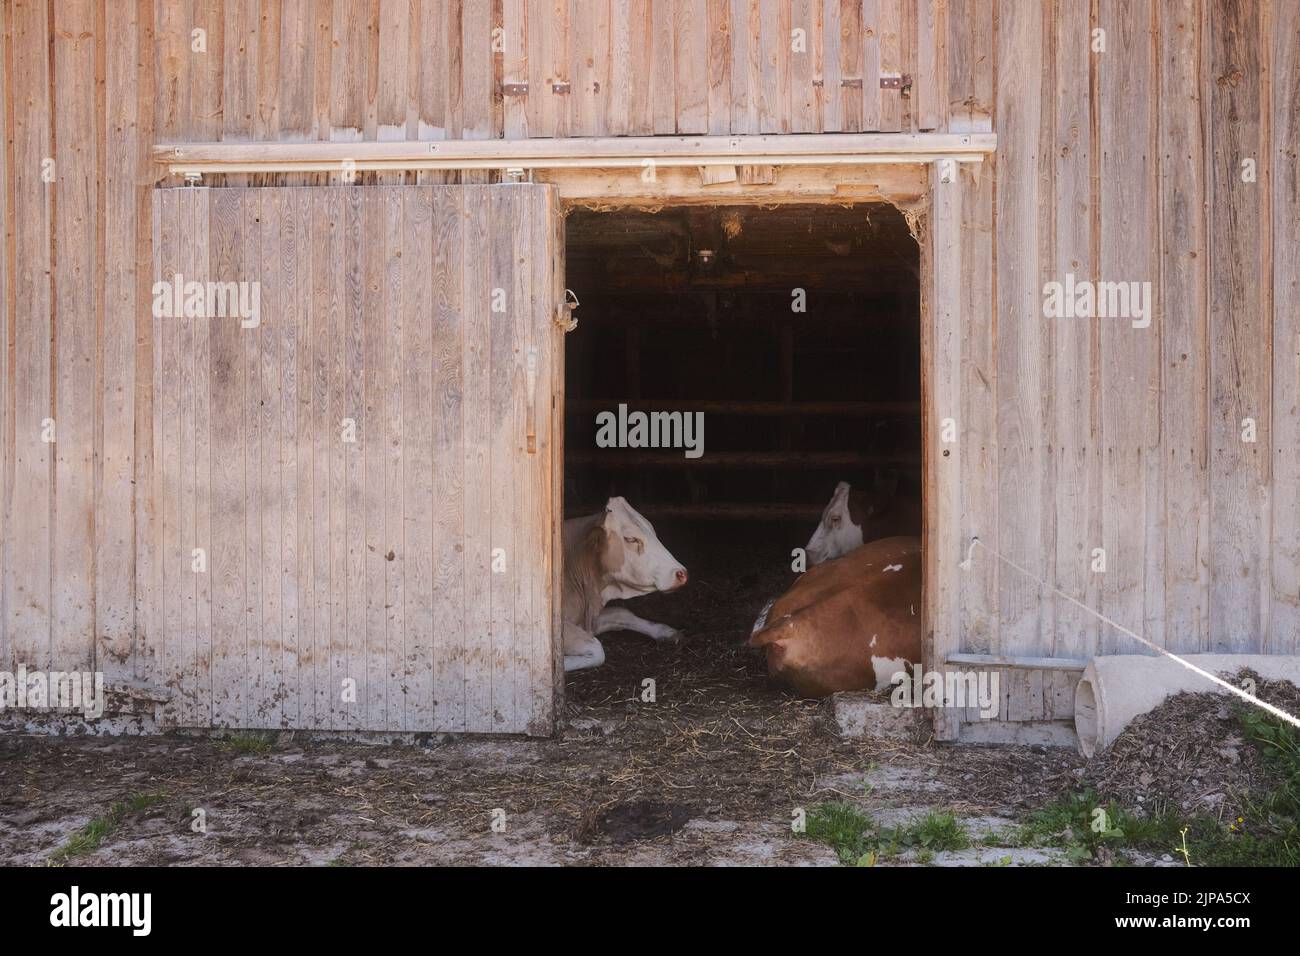 due mucche brune e bianche giacenti in un fienile di legno Foto Stock